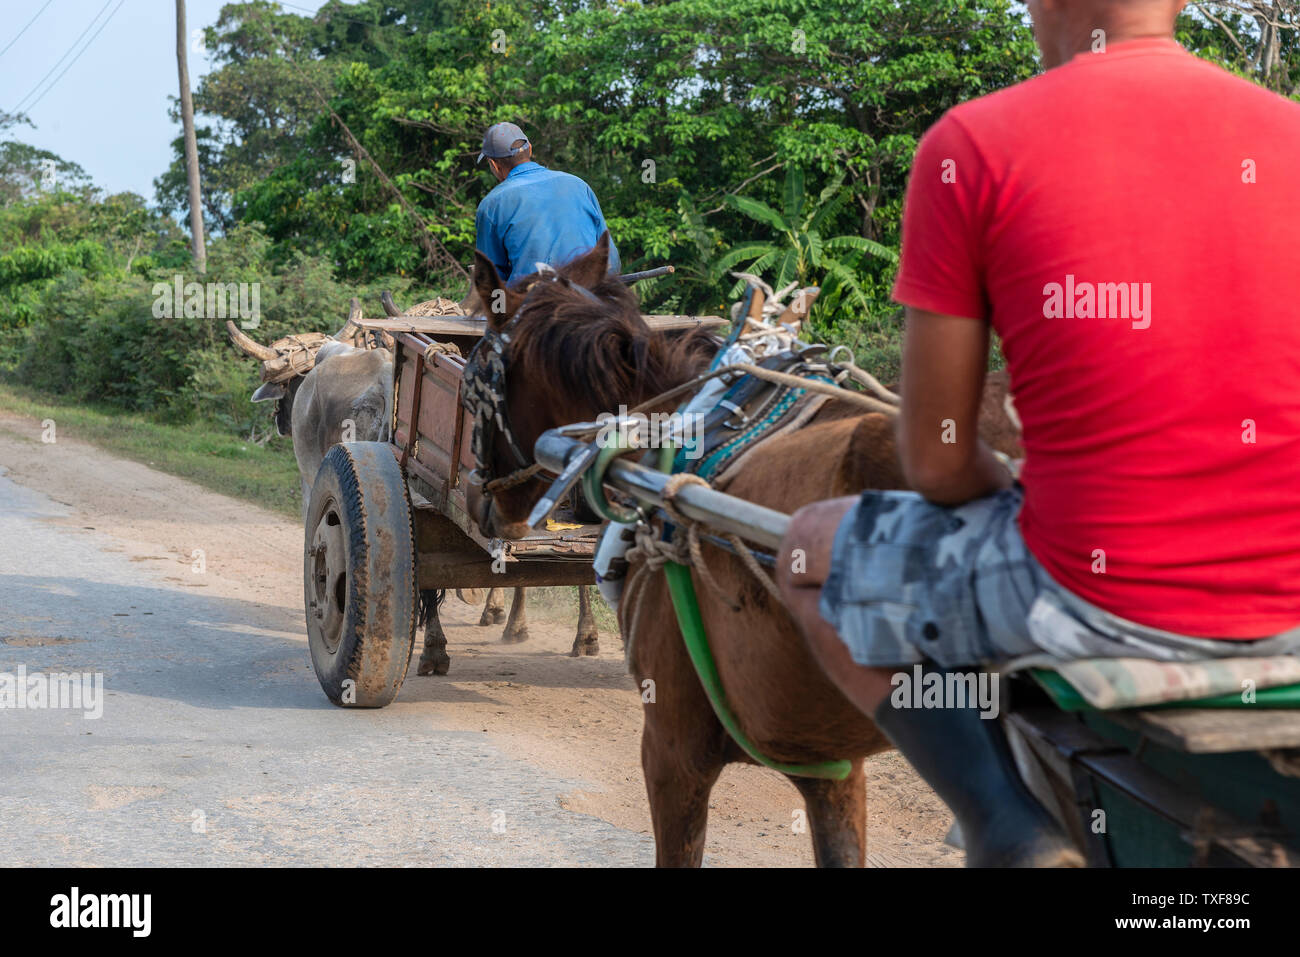 Die tabakerzeuger mit einem Paar Ochsen und Pferde Karren ziehen entlang einer staubigen Straße in einer ländlichen Gegend von San Juan y Martinez, Pinar del Rio, Kuba Stockfoto